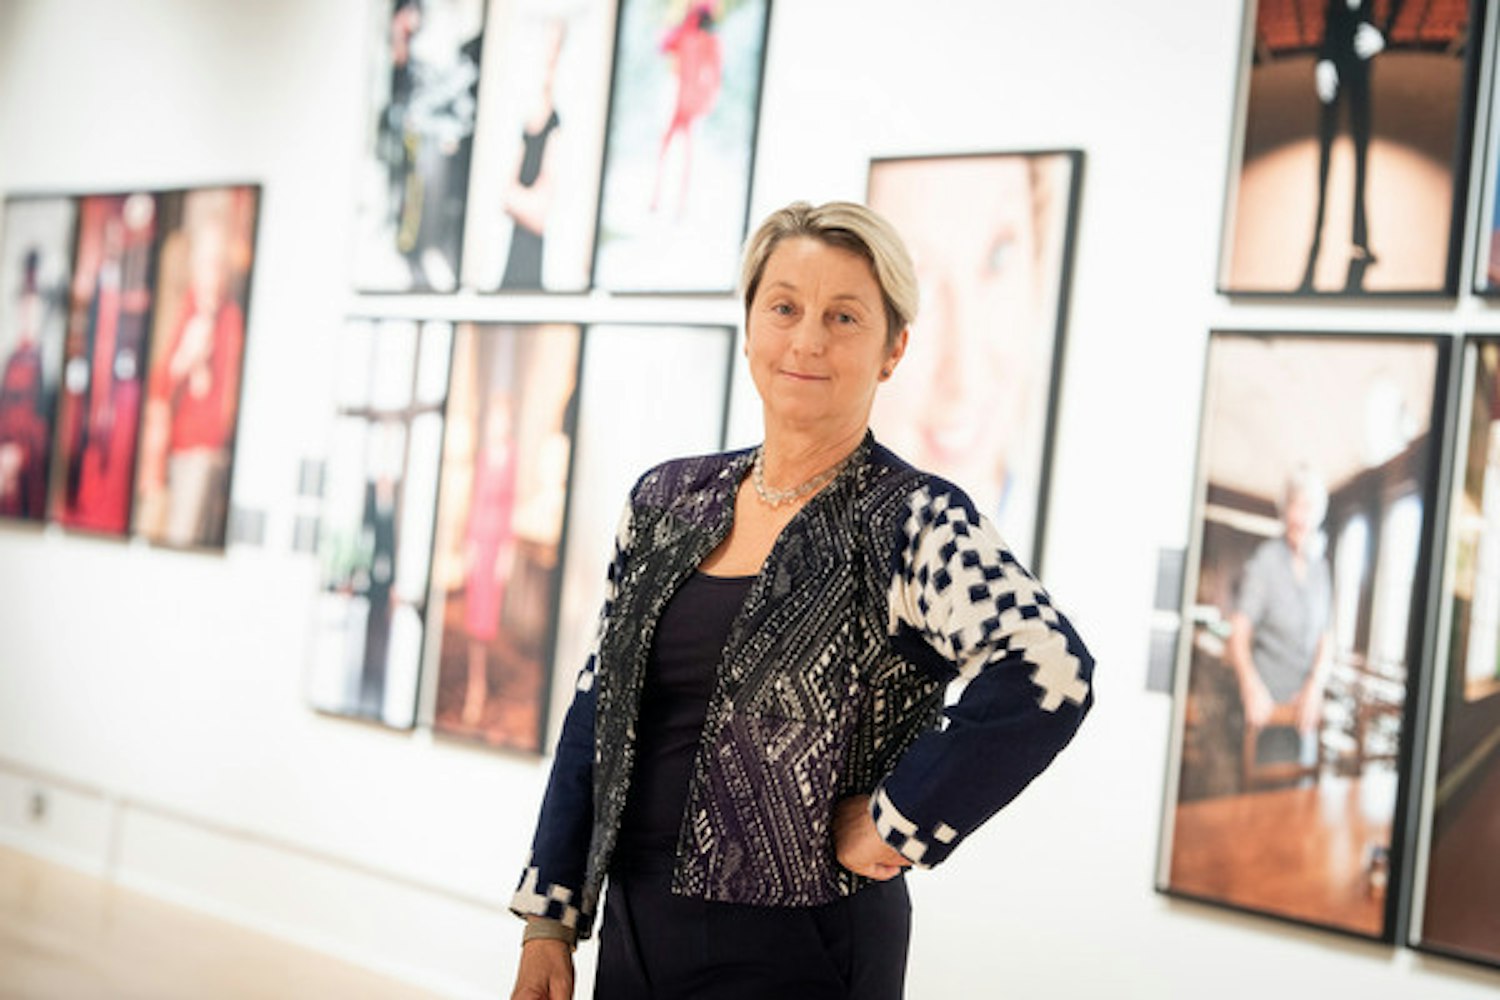 Exhibition Tour 100 First Women Portraits with artist Anita Corbin